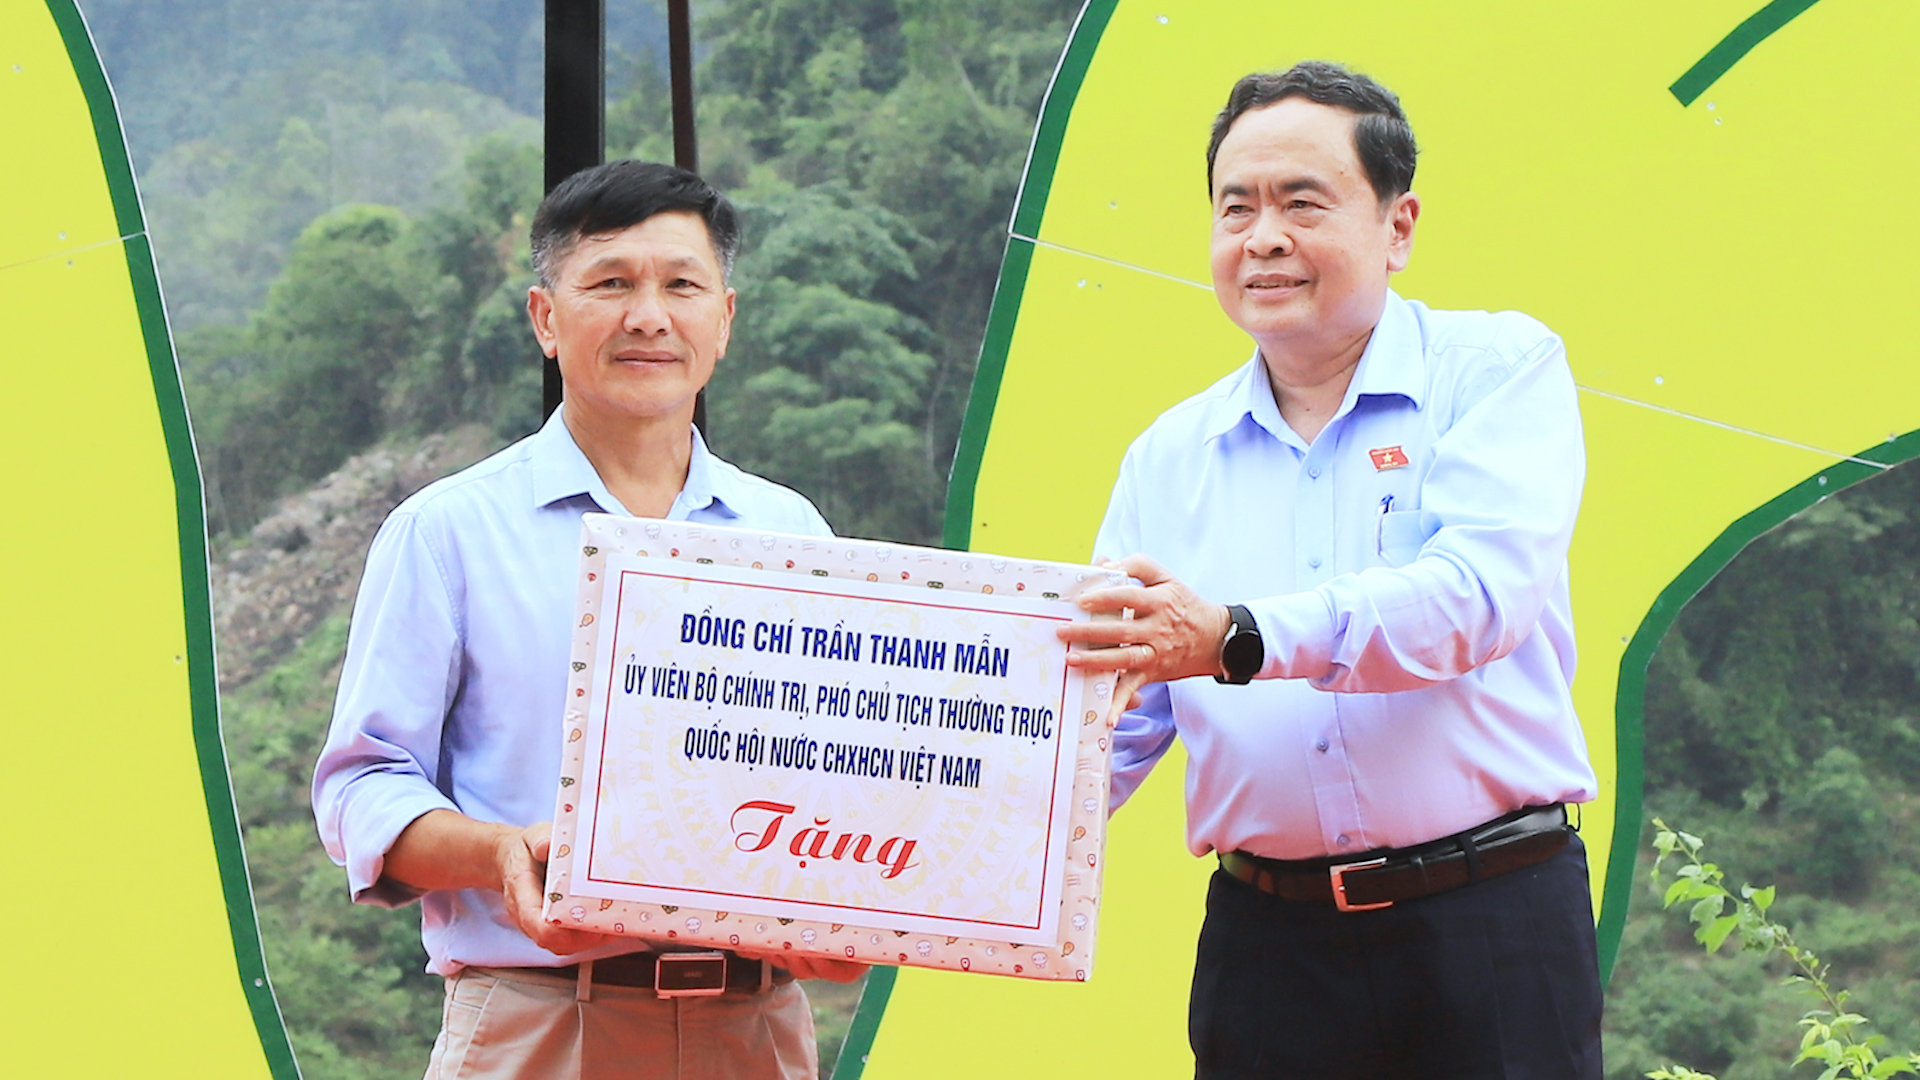 Đồng chí Phó Chủ tịch Thường trực Quốc hội thăm, tặng quà tại huyện Mộc Châu - Ảnh 3.